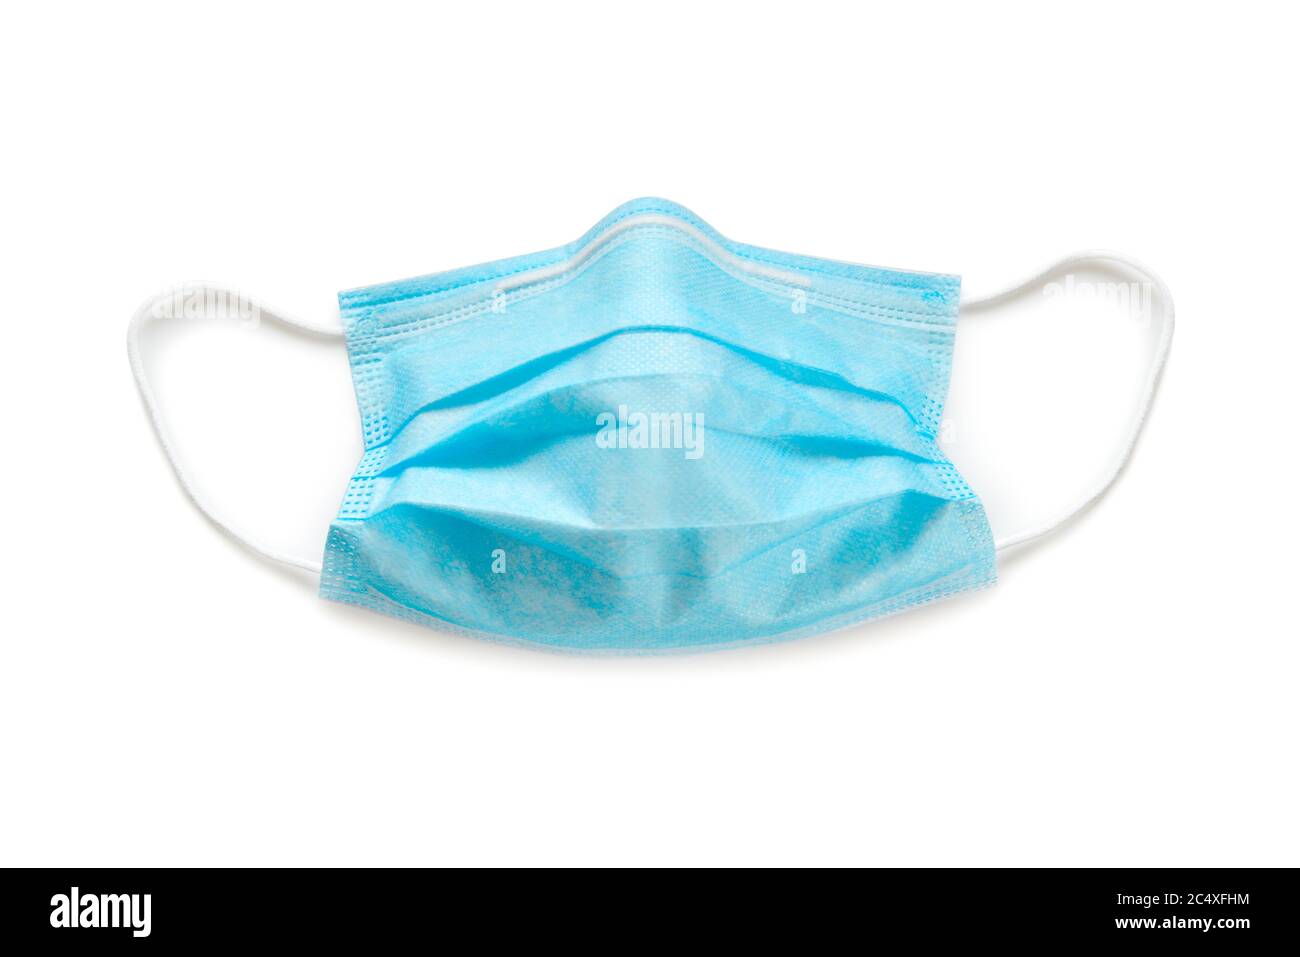 Equipo de PPE de máscara facial con coronavirus Foto de stock